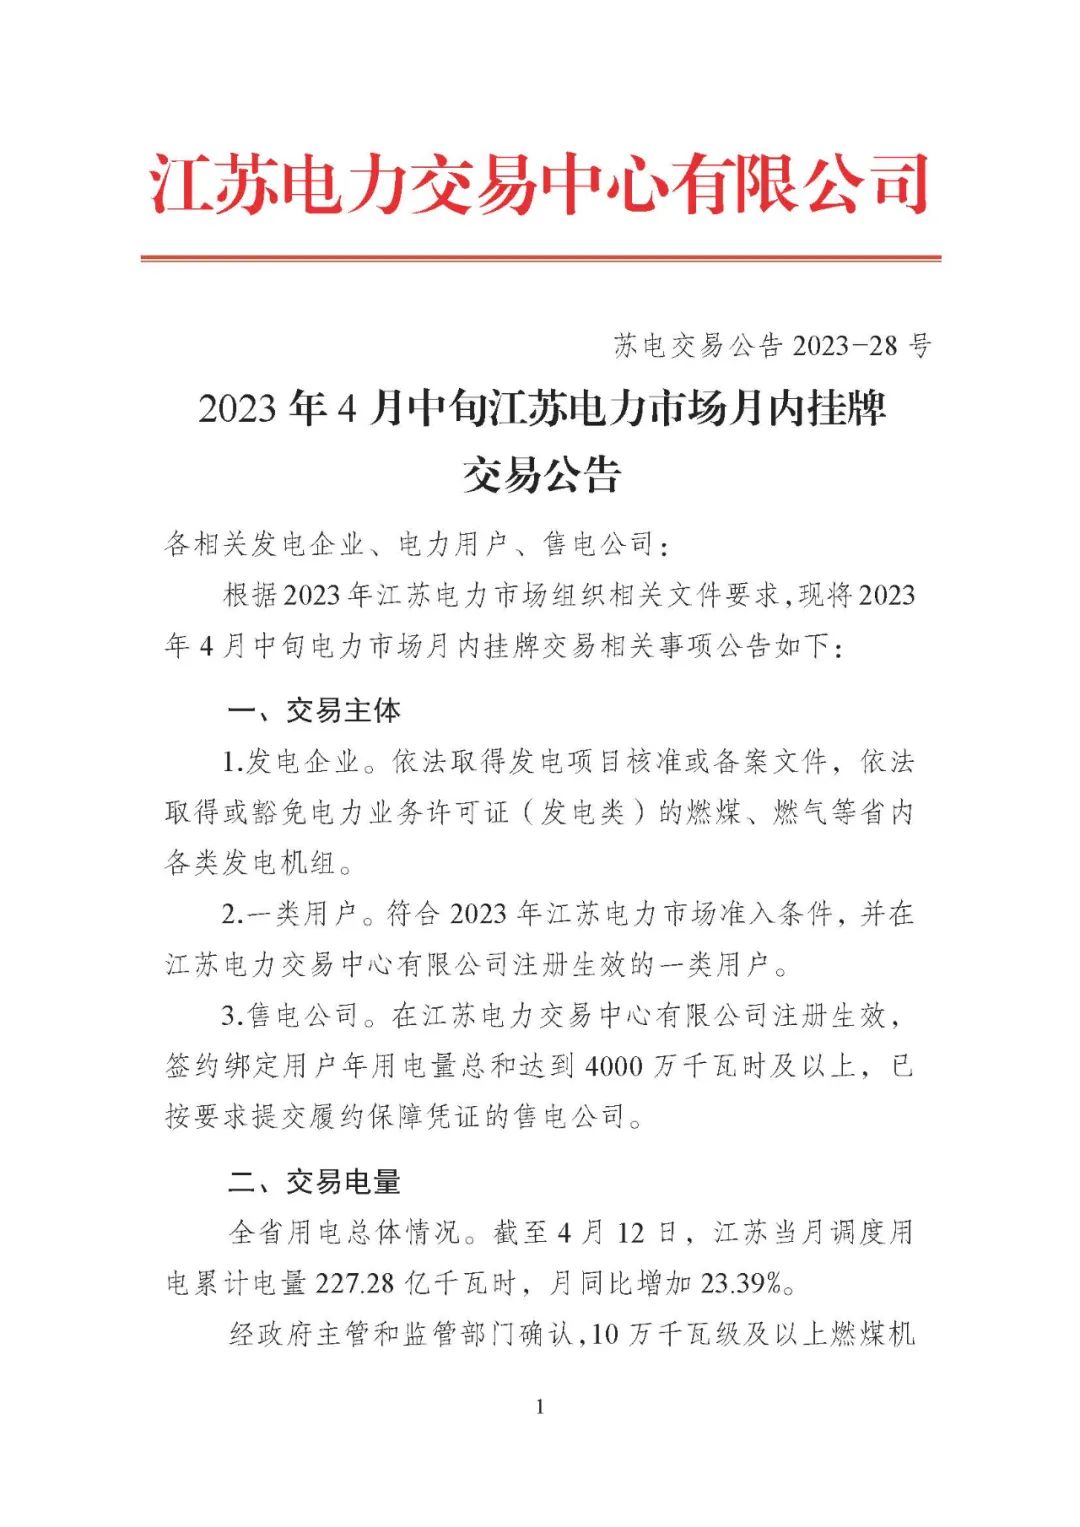 2023年4月中旬江苏电力市场月内挂牌交易公告